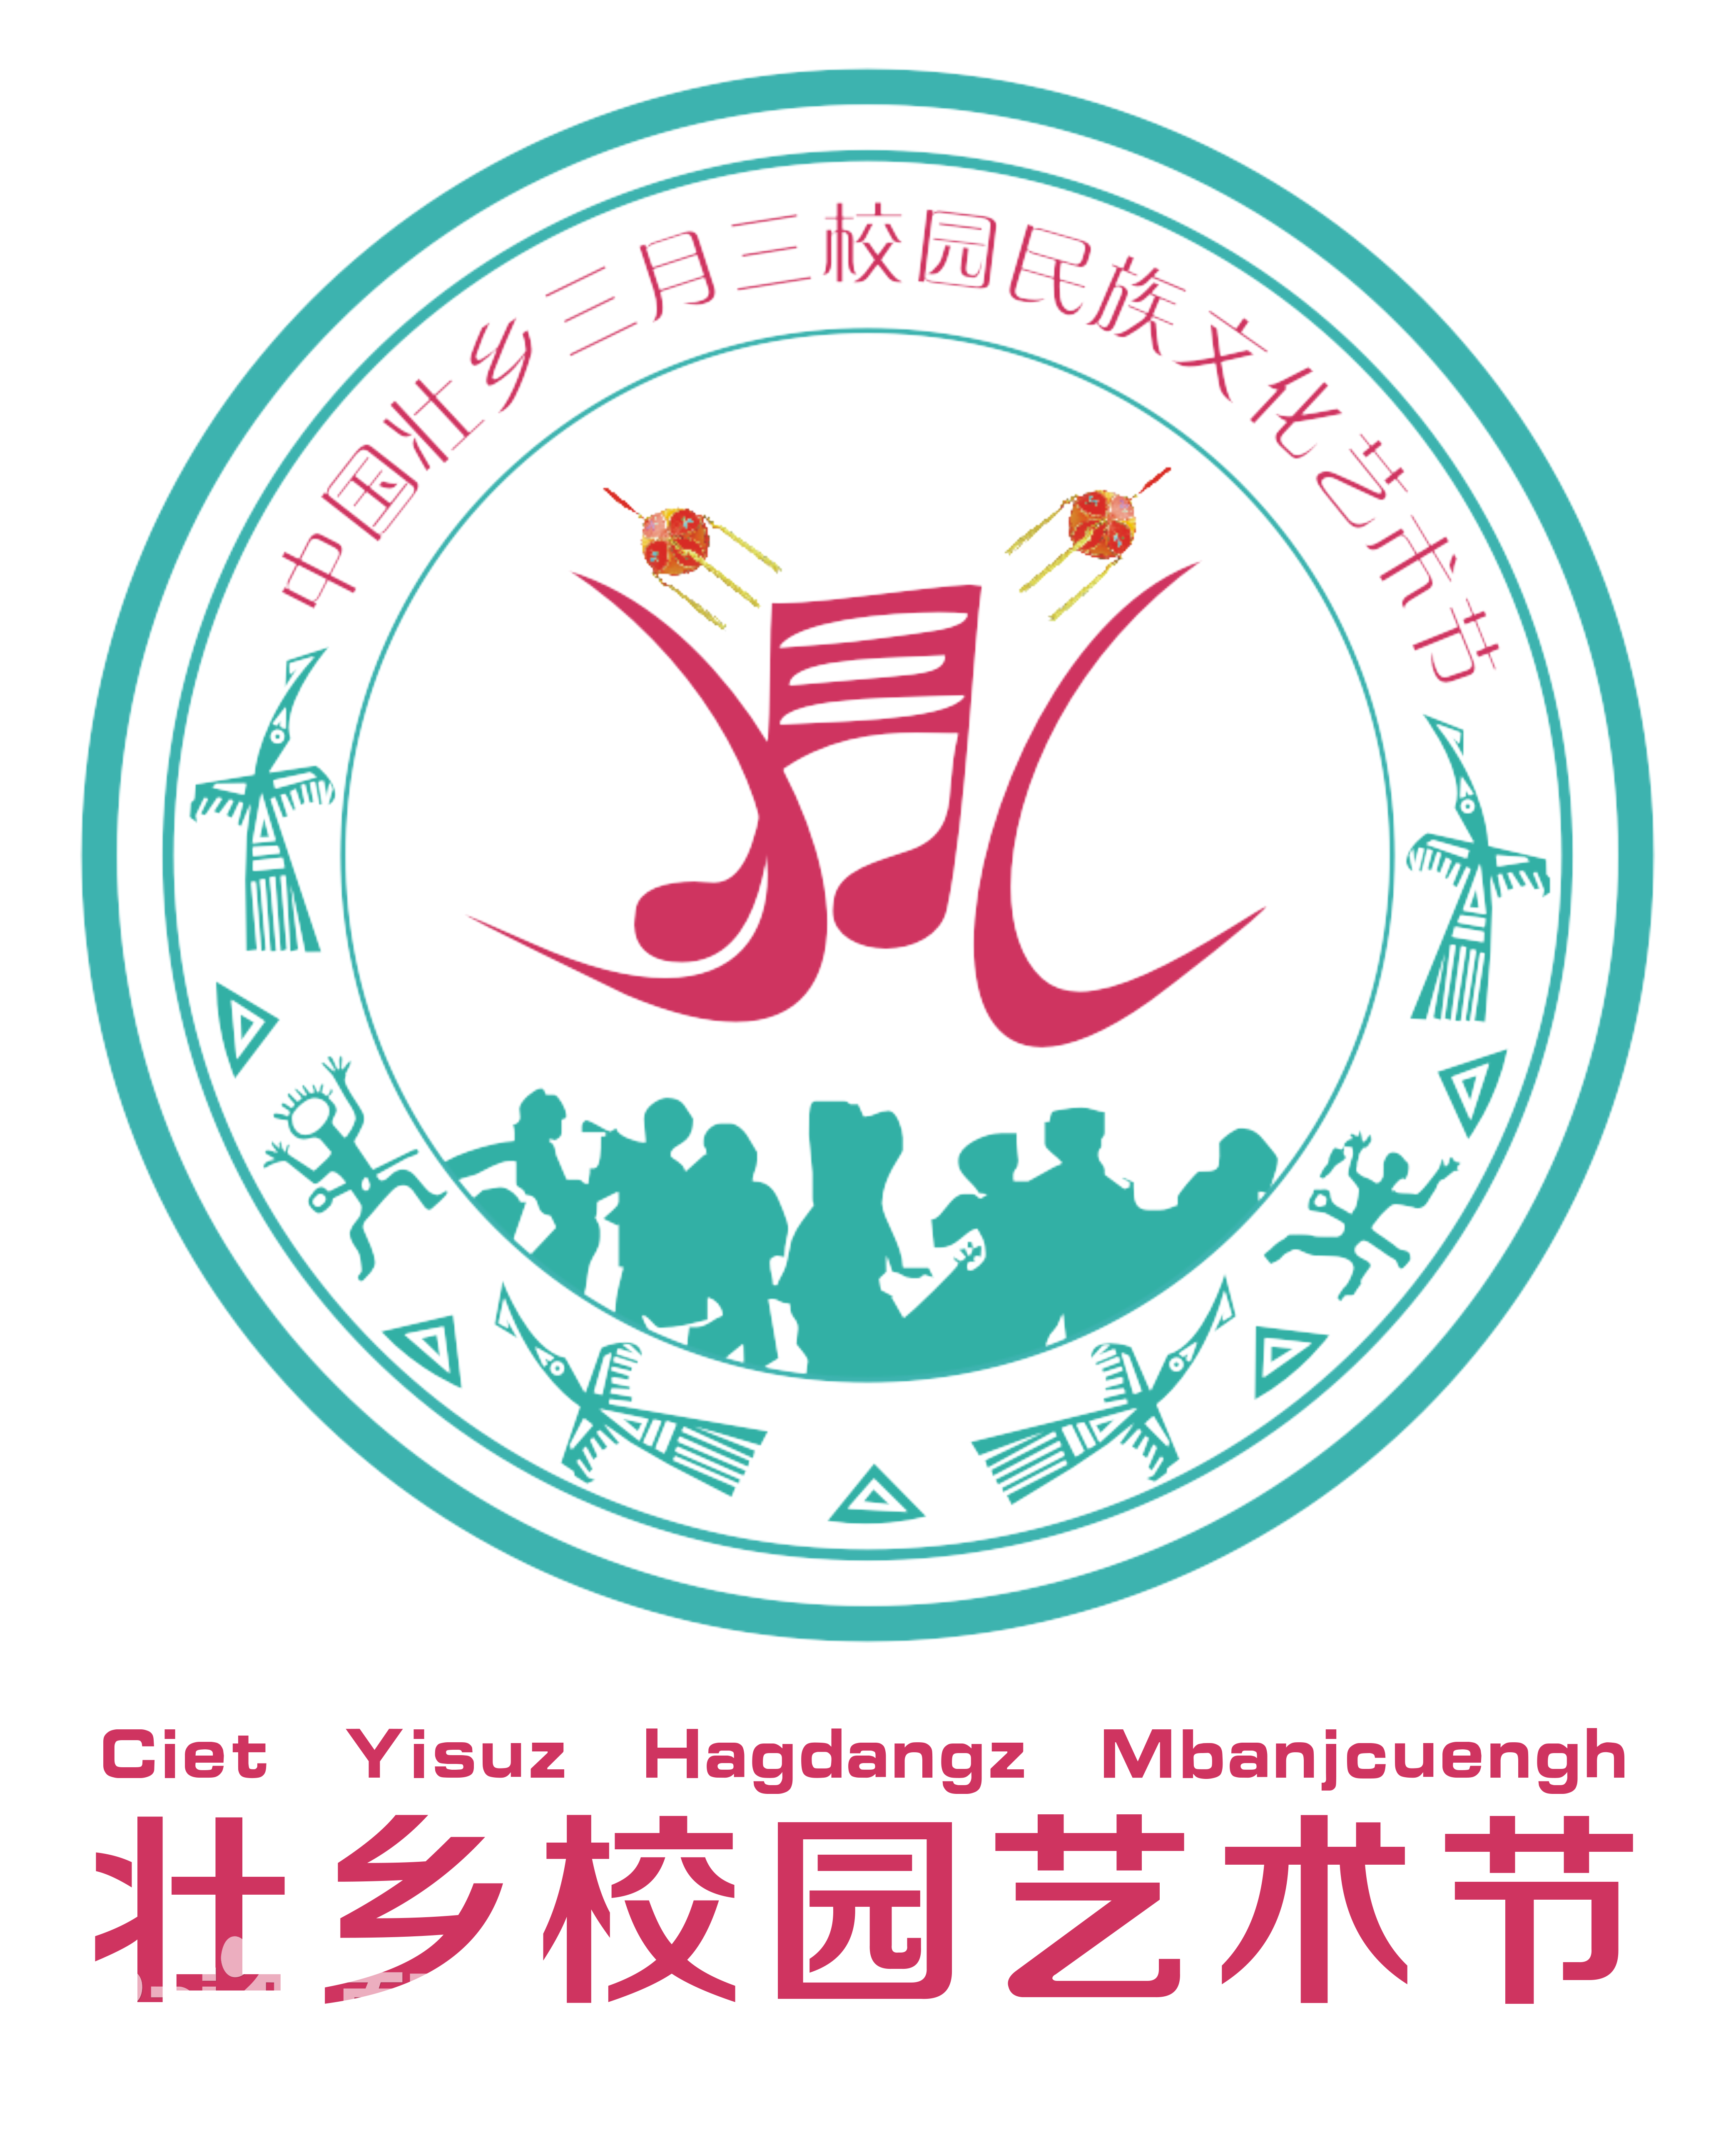 三月三校園民族文化藝術節logo